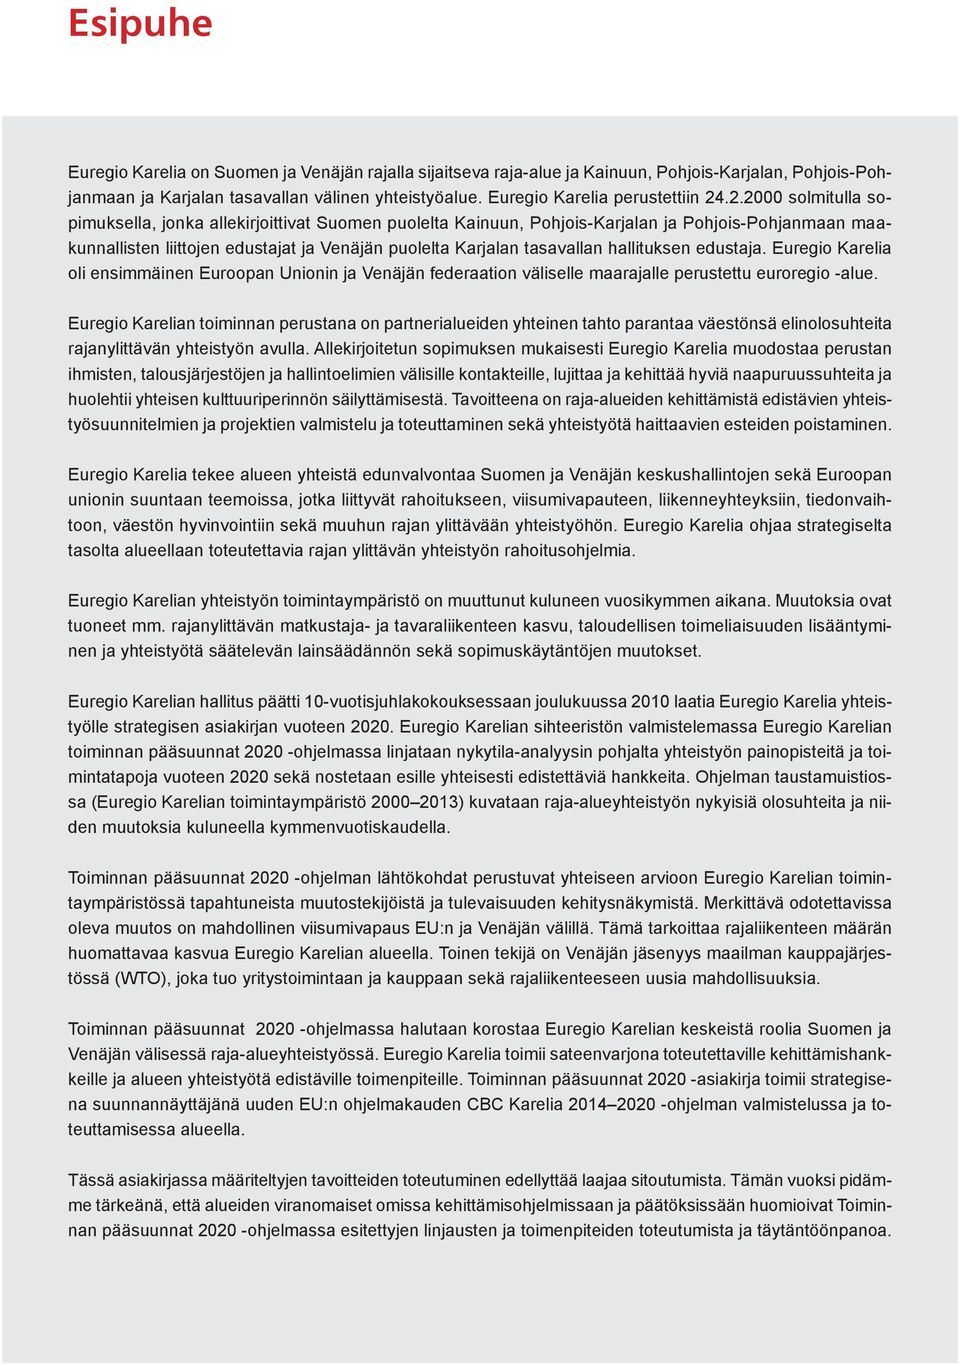 .2.2000 solmitulla sopimuksella, jonka allekirjoittivat Suomen puolelta Kainuun, Pohjois-Karjalan ja Pohjois-Pohjanmaan maakunnallisten liittojen edustajat ja Venäjän puolelta Karjalan tasavallan